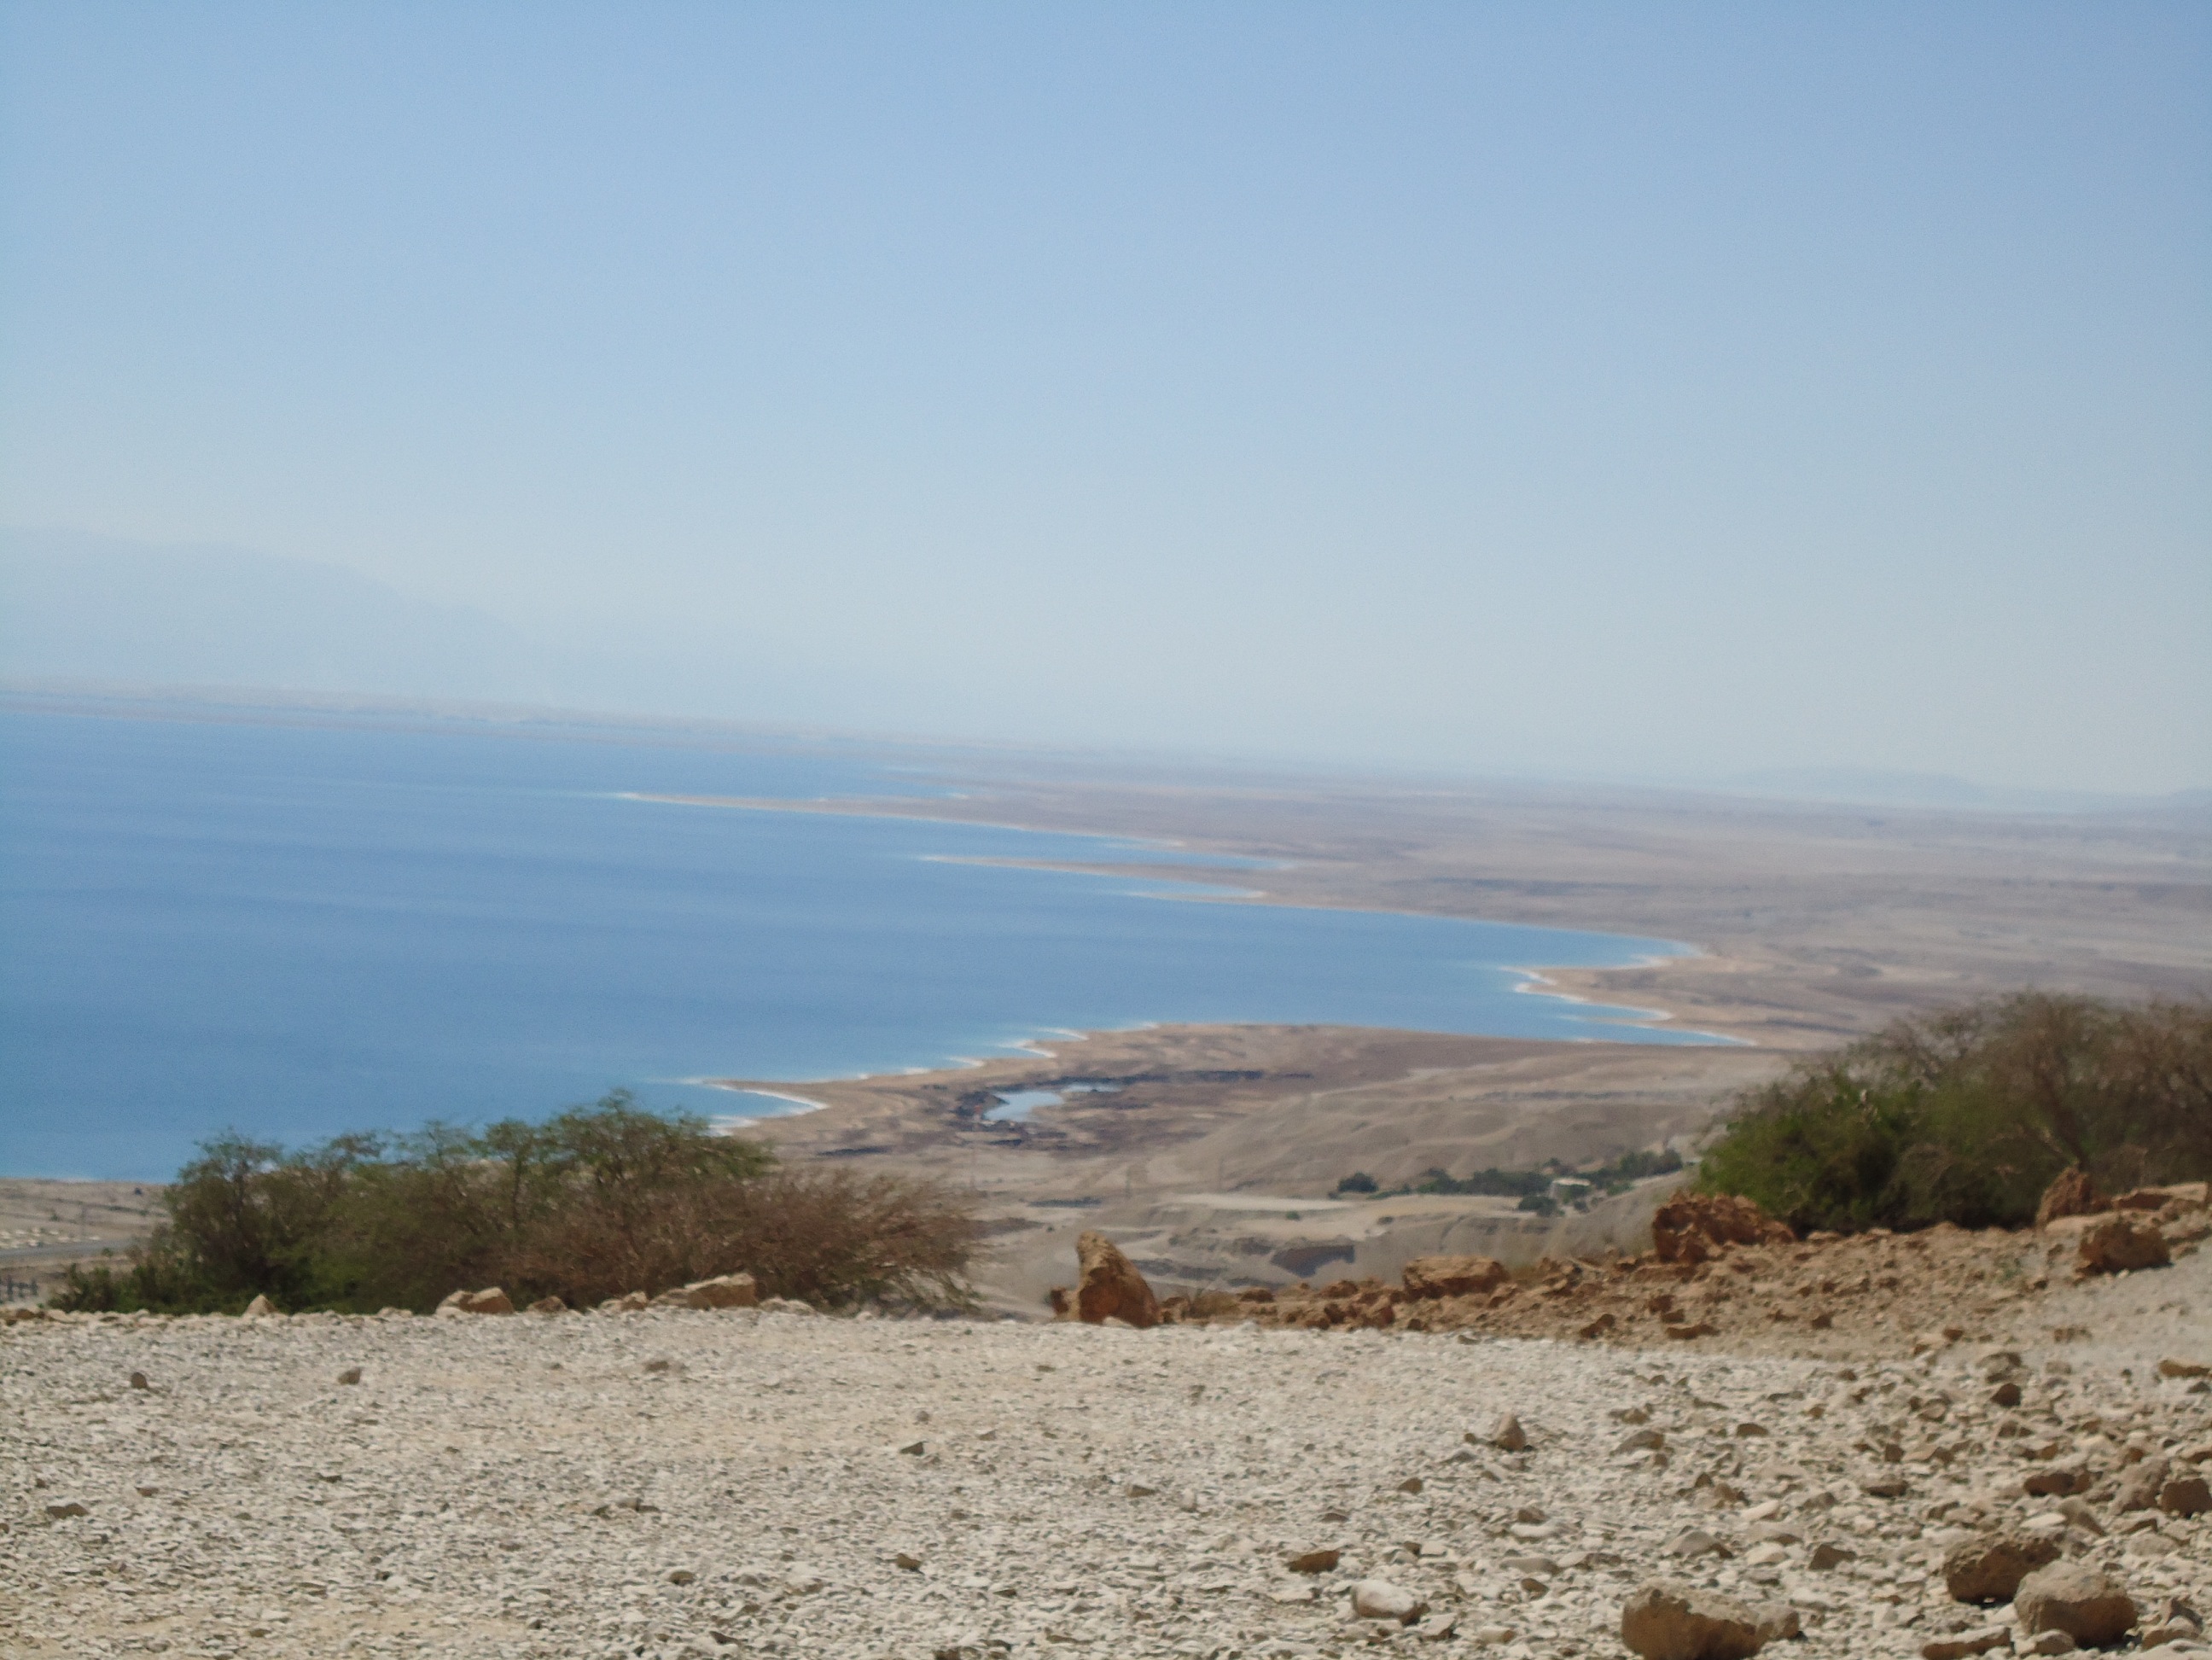 Qumran Qumran e' una località sulla sponda occidentale del